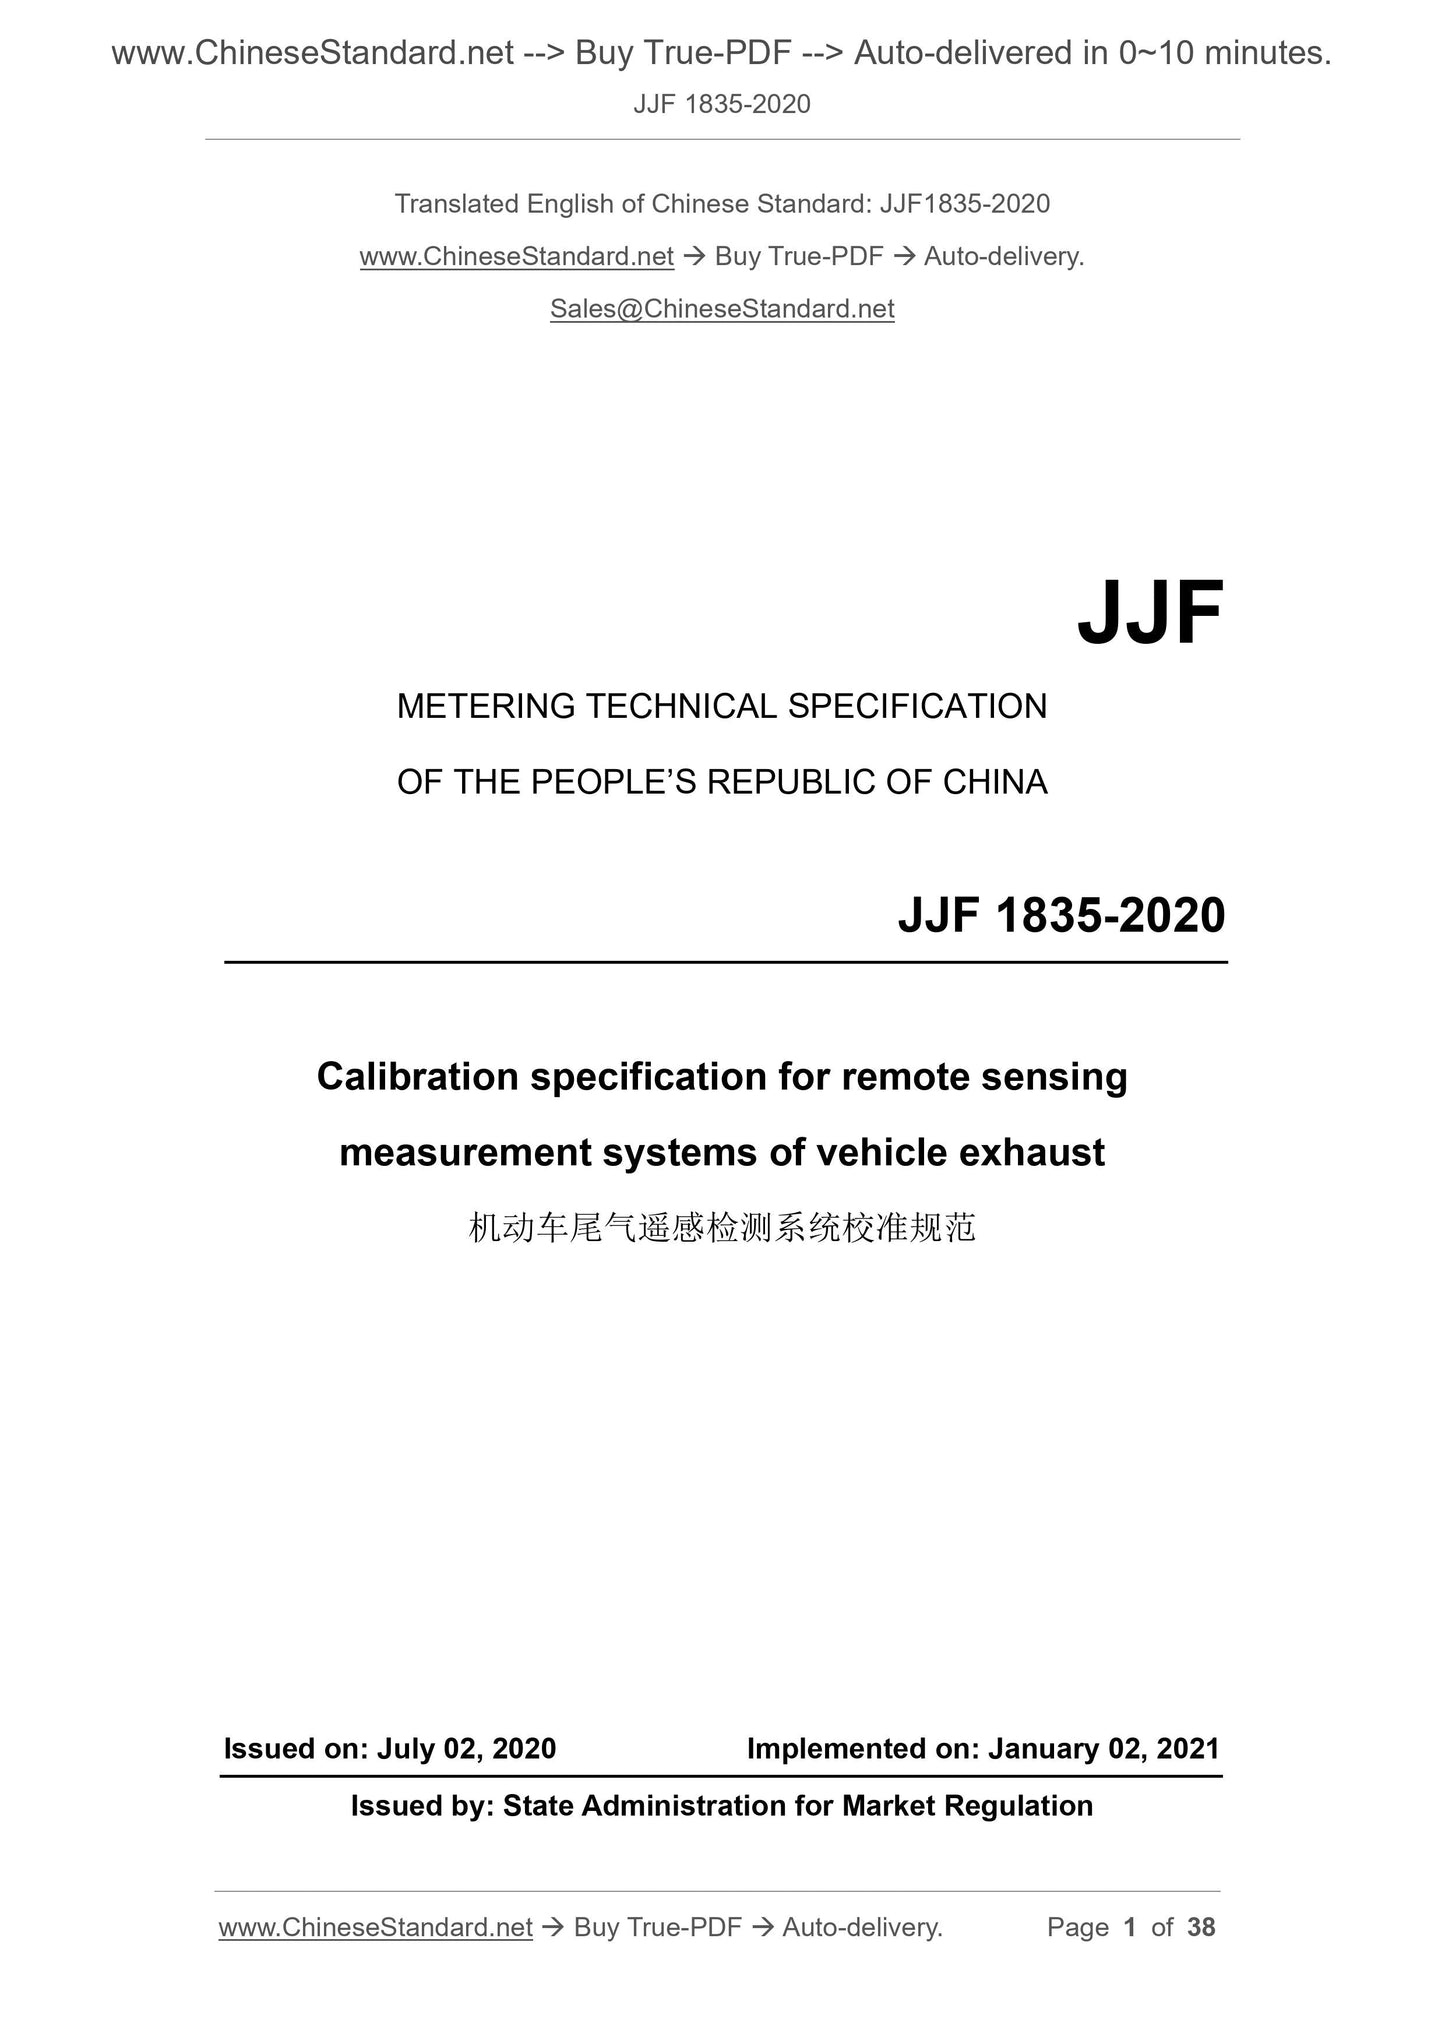 JJF 1835-2020 Page 1